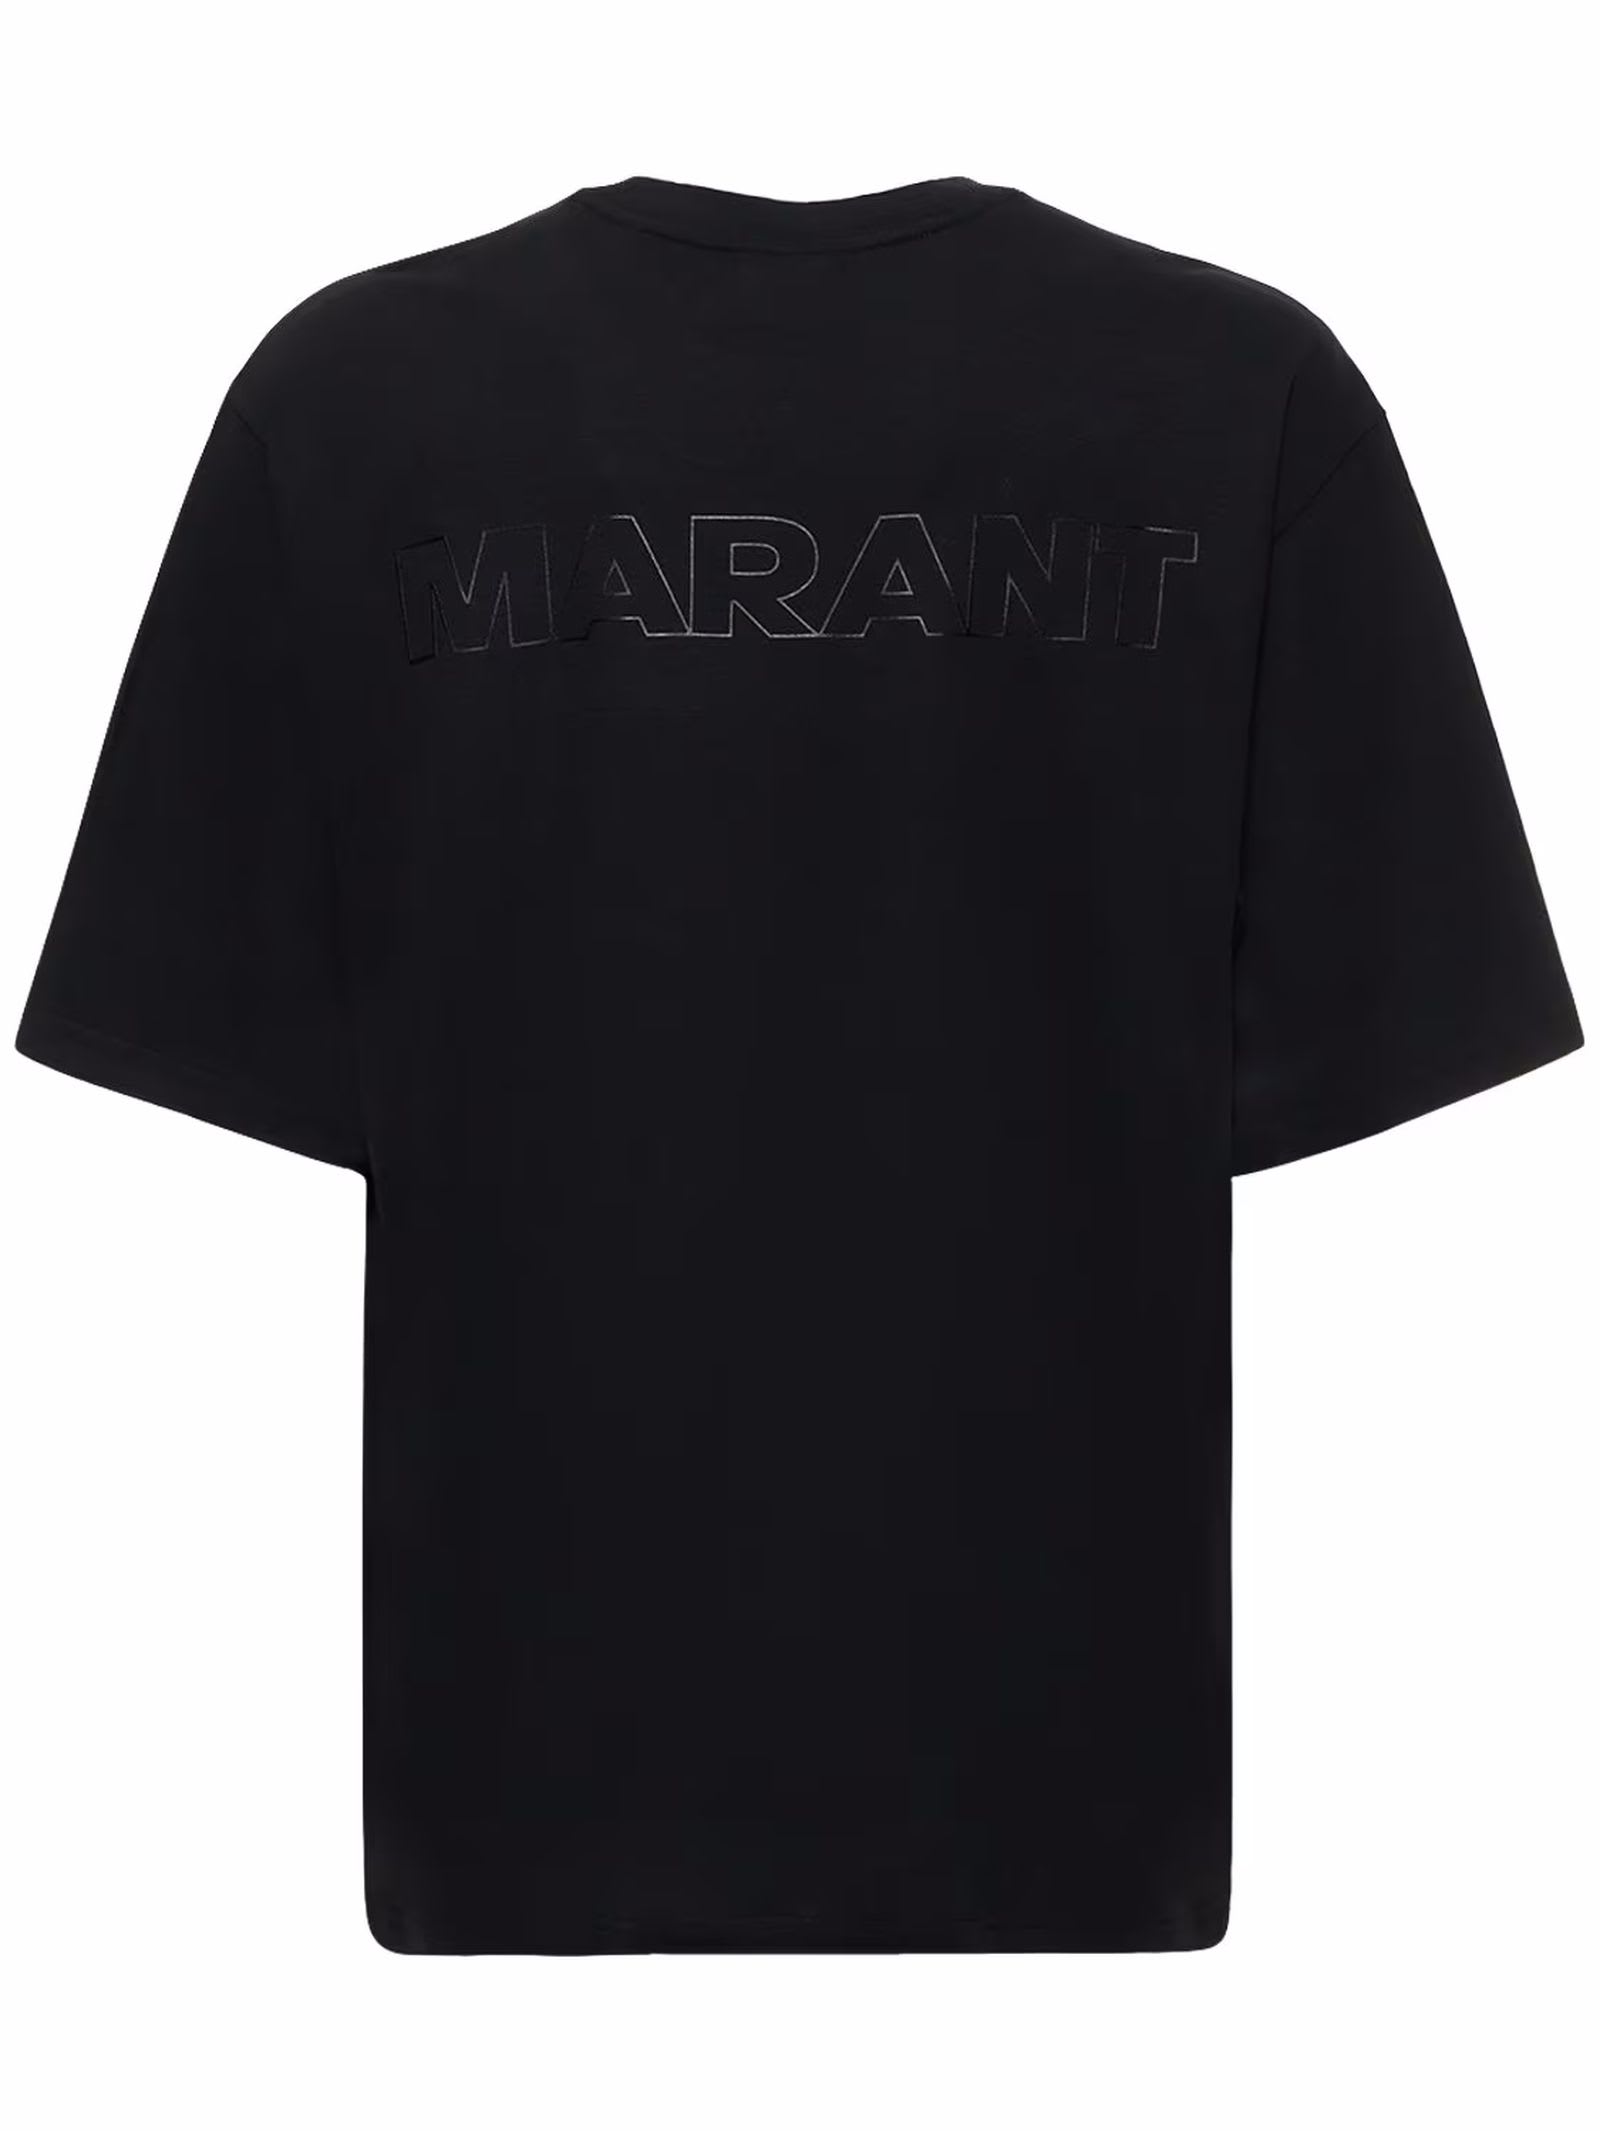 Shop Isabel Marant Black Cotton T-shirt